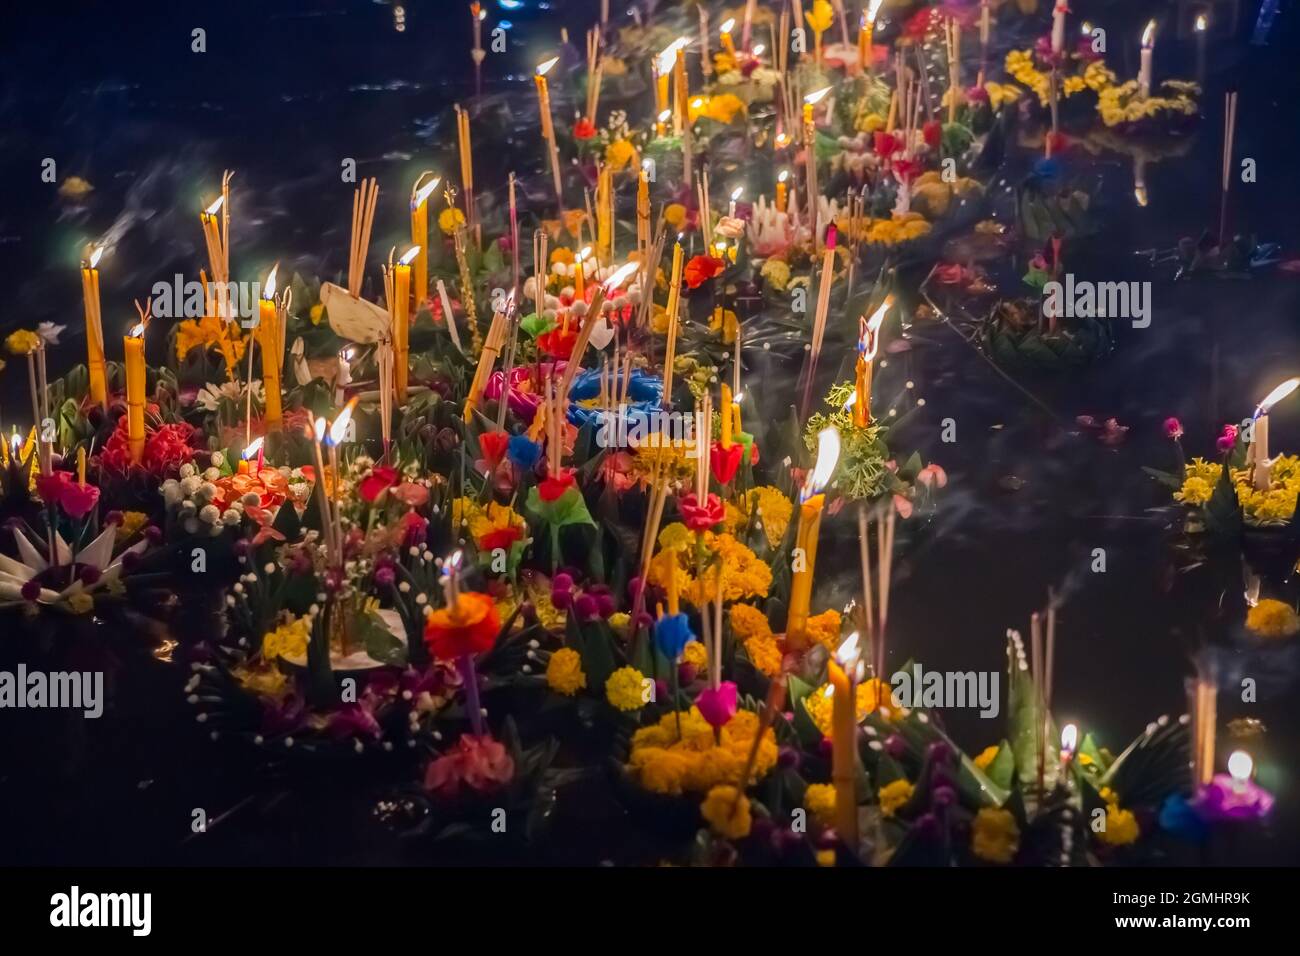 De petits bateaux avec des bougies et des fleurs sont donnés pour le festival traditionnel de Loy Krathong de Thailands Banque D'Images